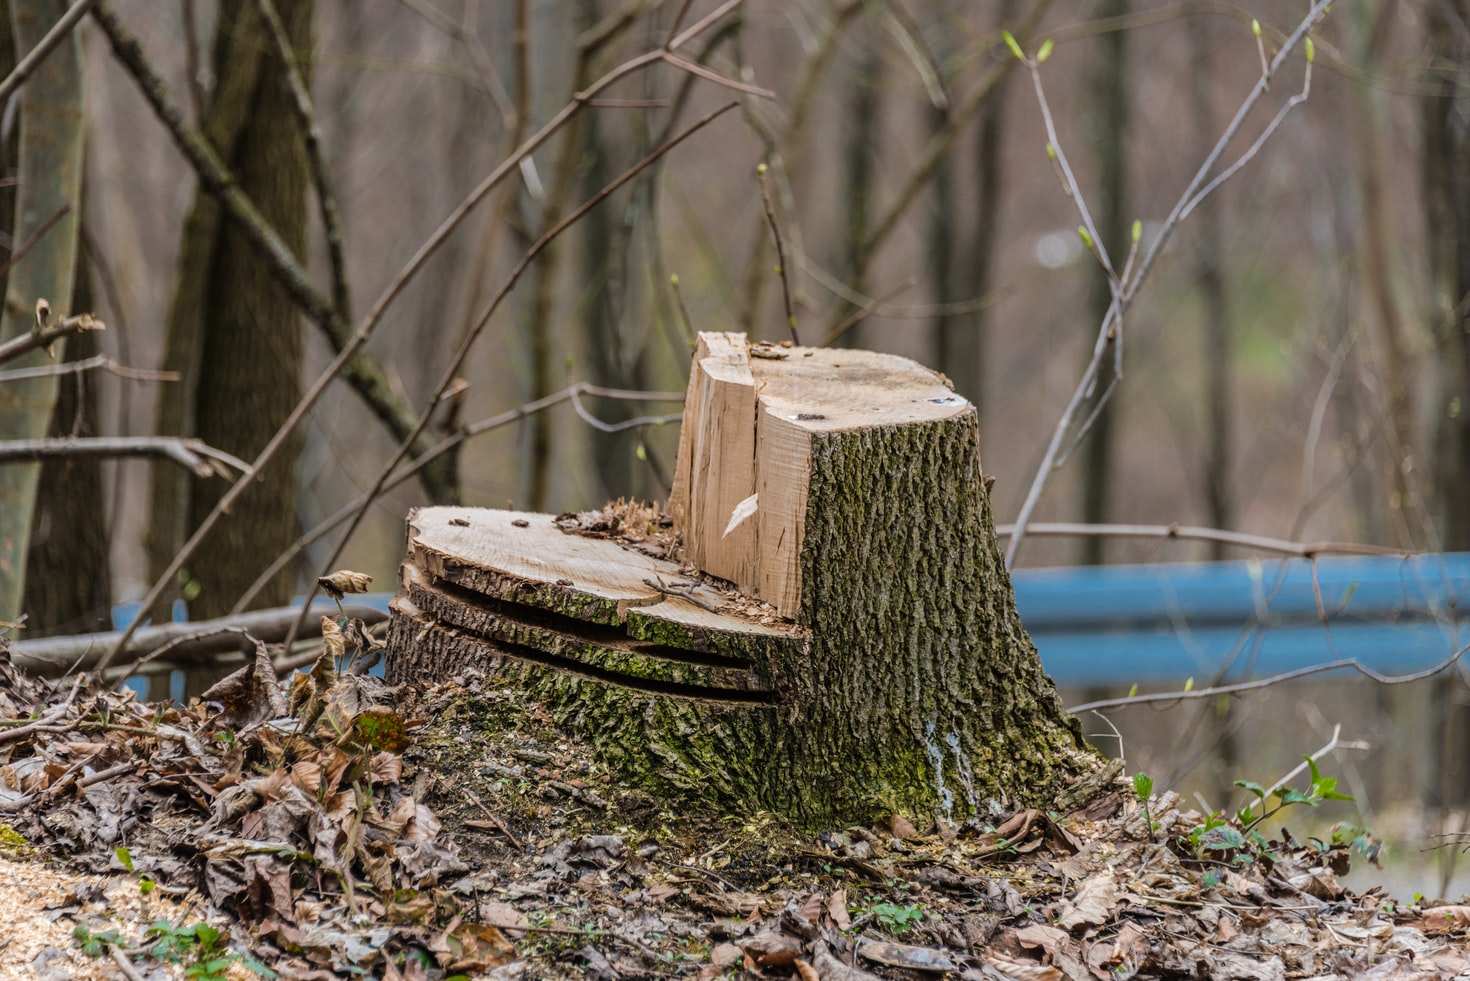 Baumfällungen in Altrip: transparenter informieren und den Artenschutz stärker berücksichtigen